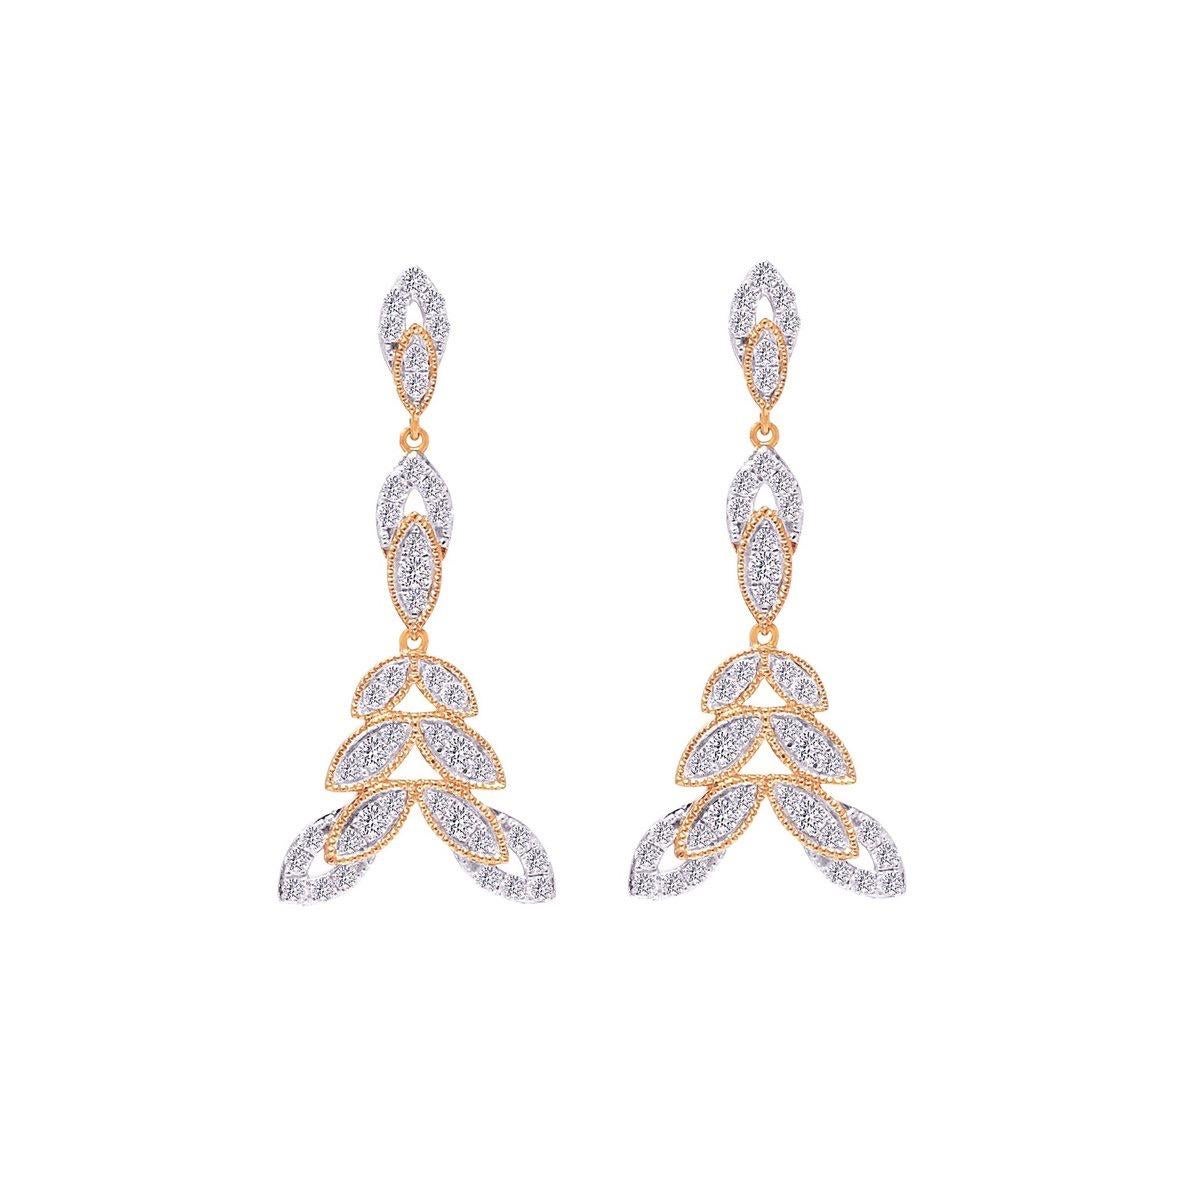 Round Cut Diamond Bloom Earrings in 18 Karat Gold For Sale